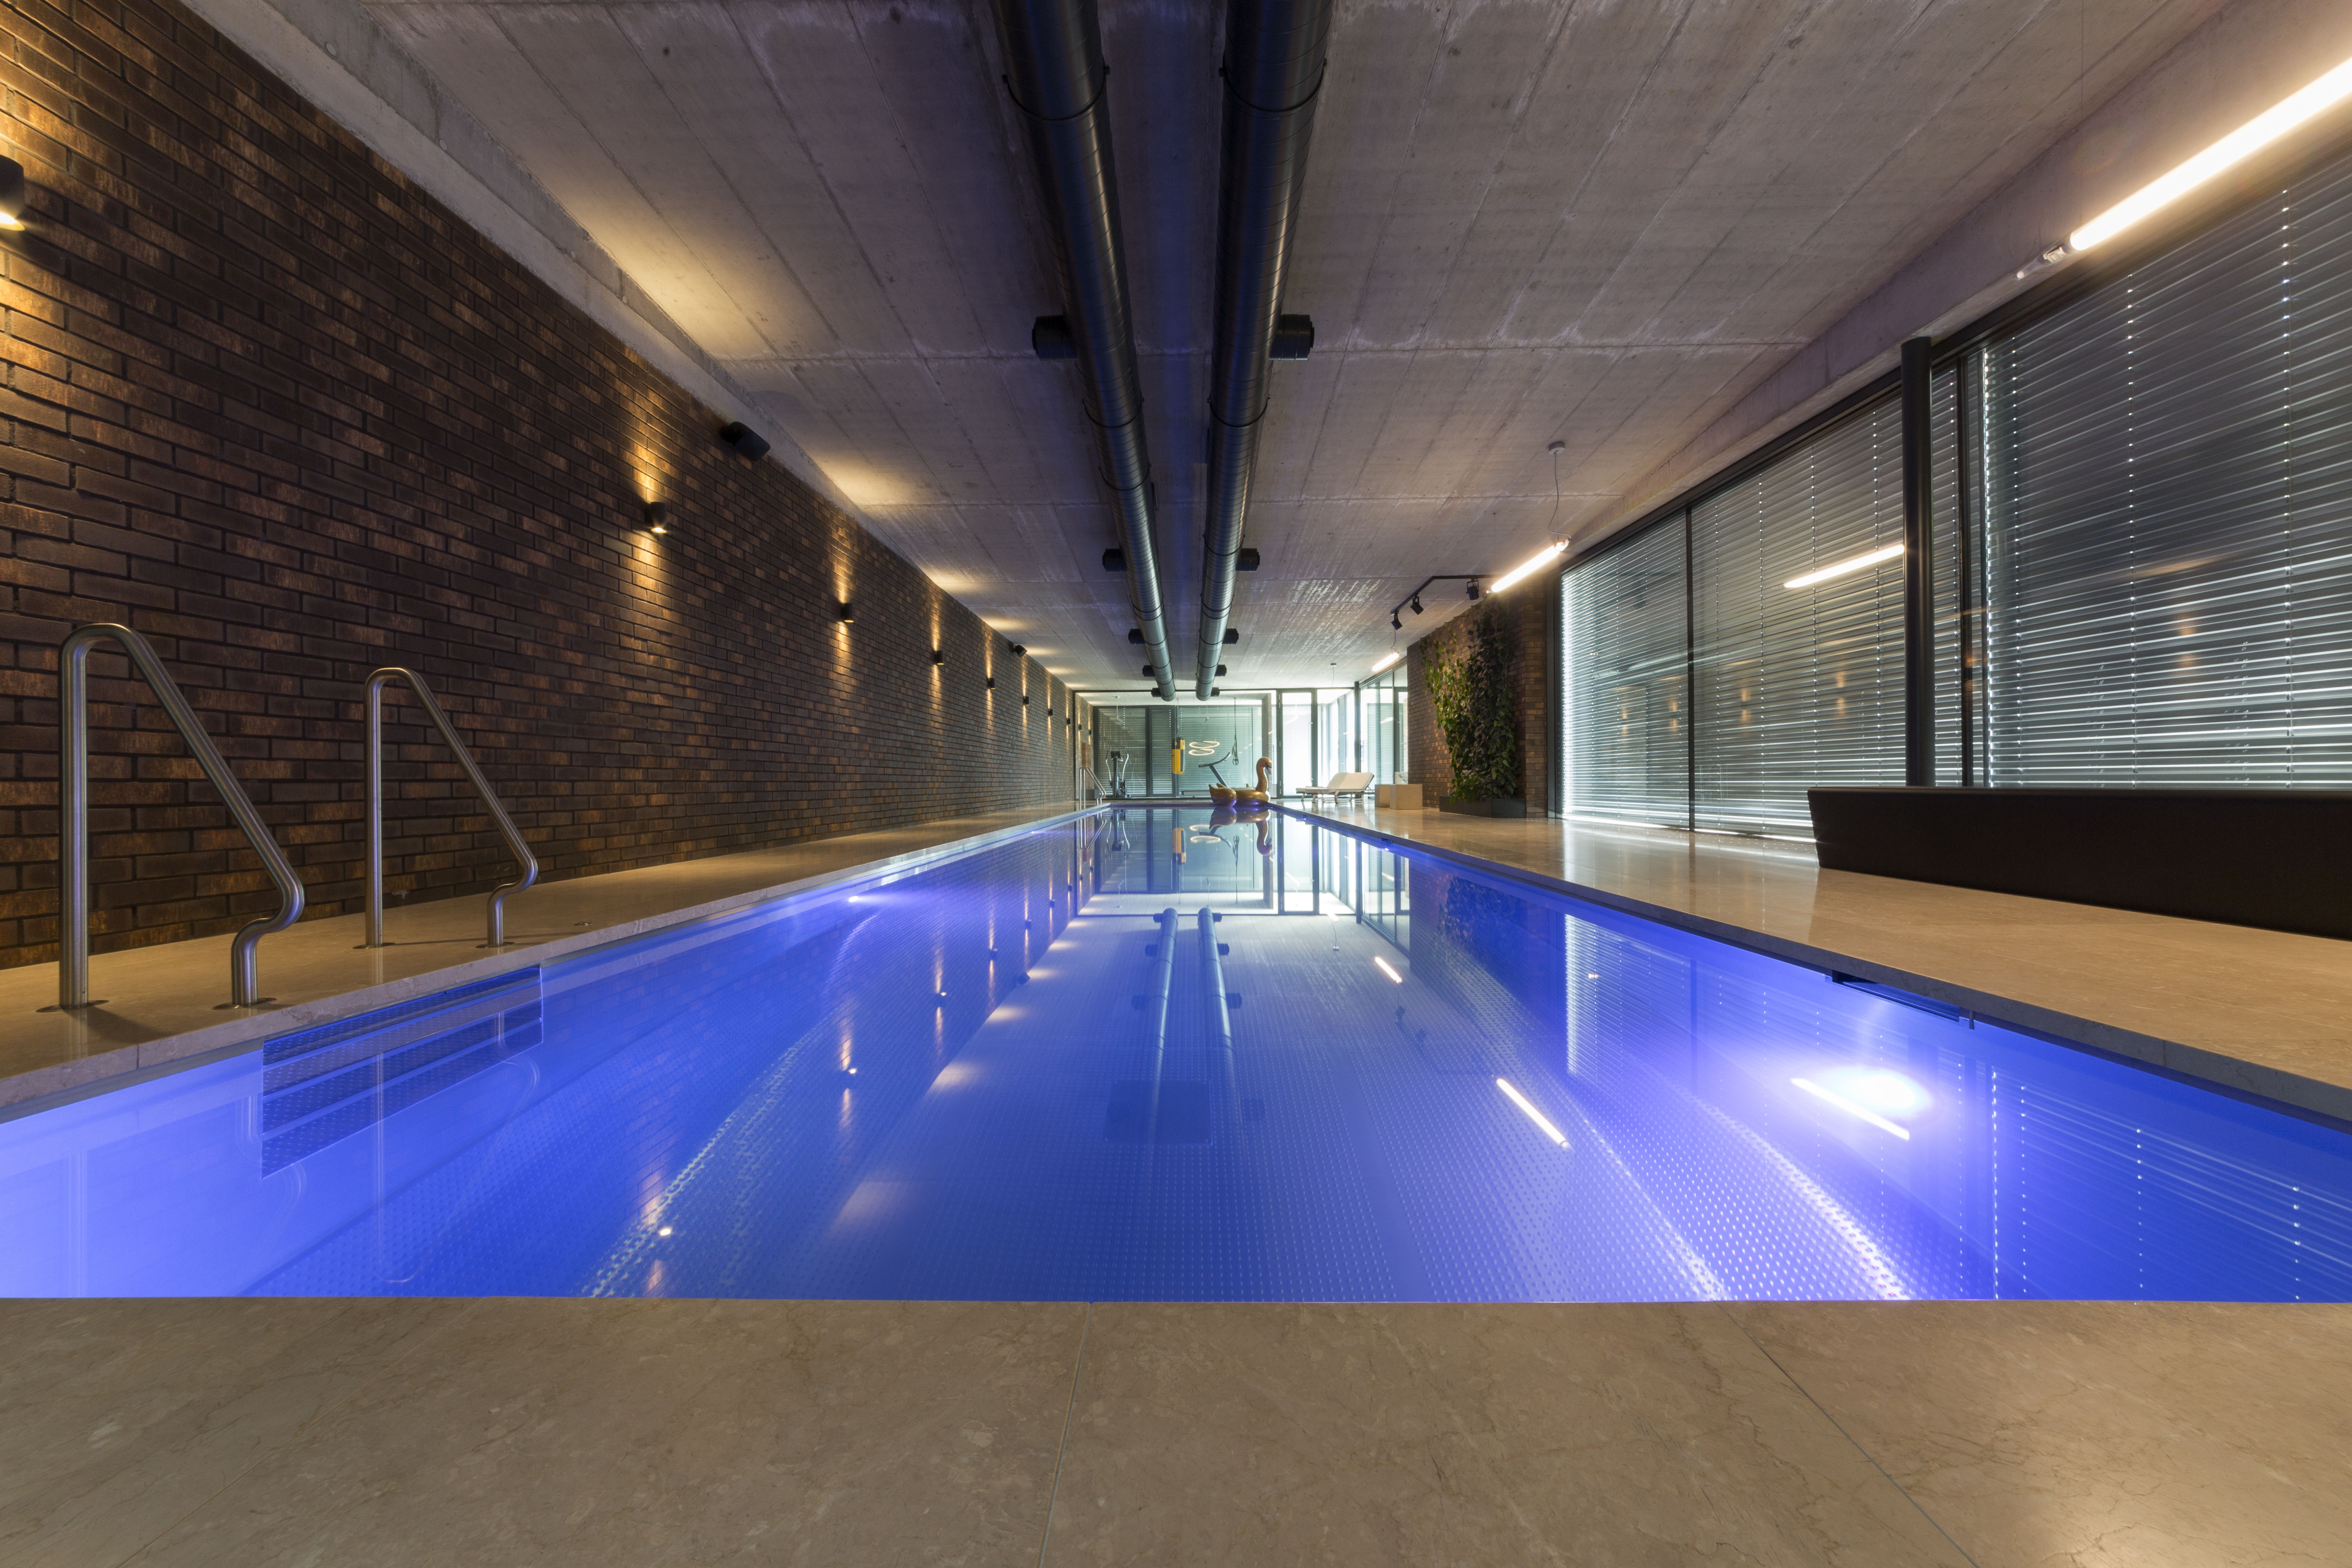 Moderní vnitřní bazén IMAGINOX, 20 metrů dlouhý